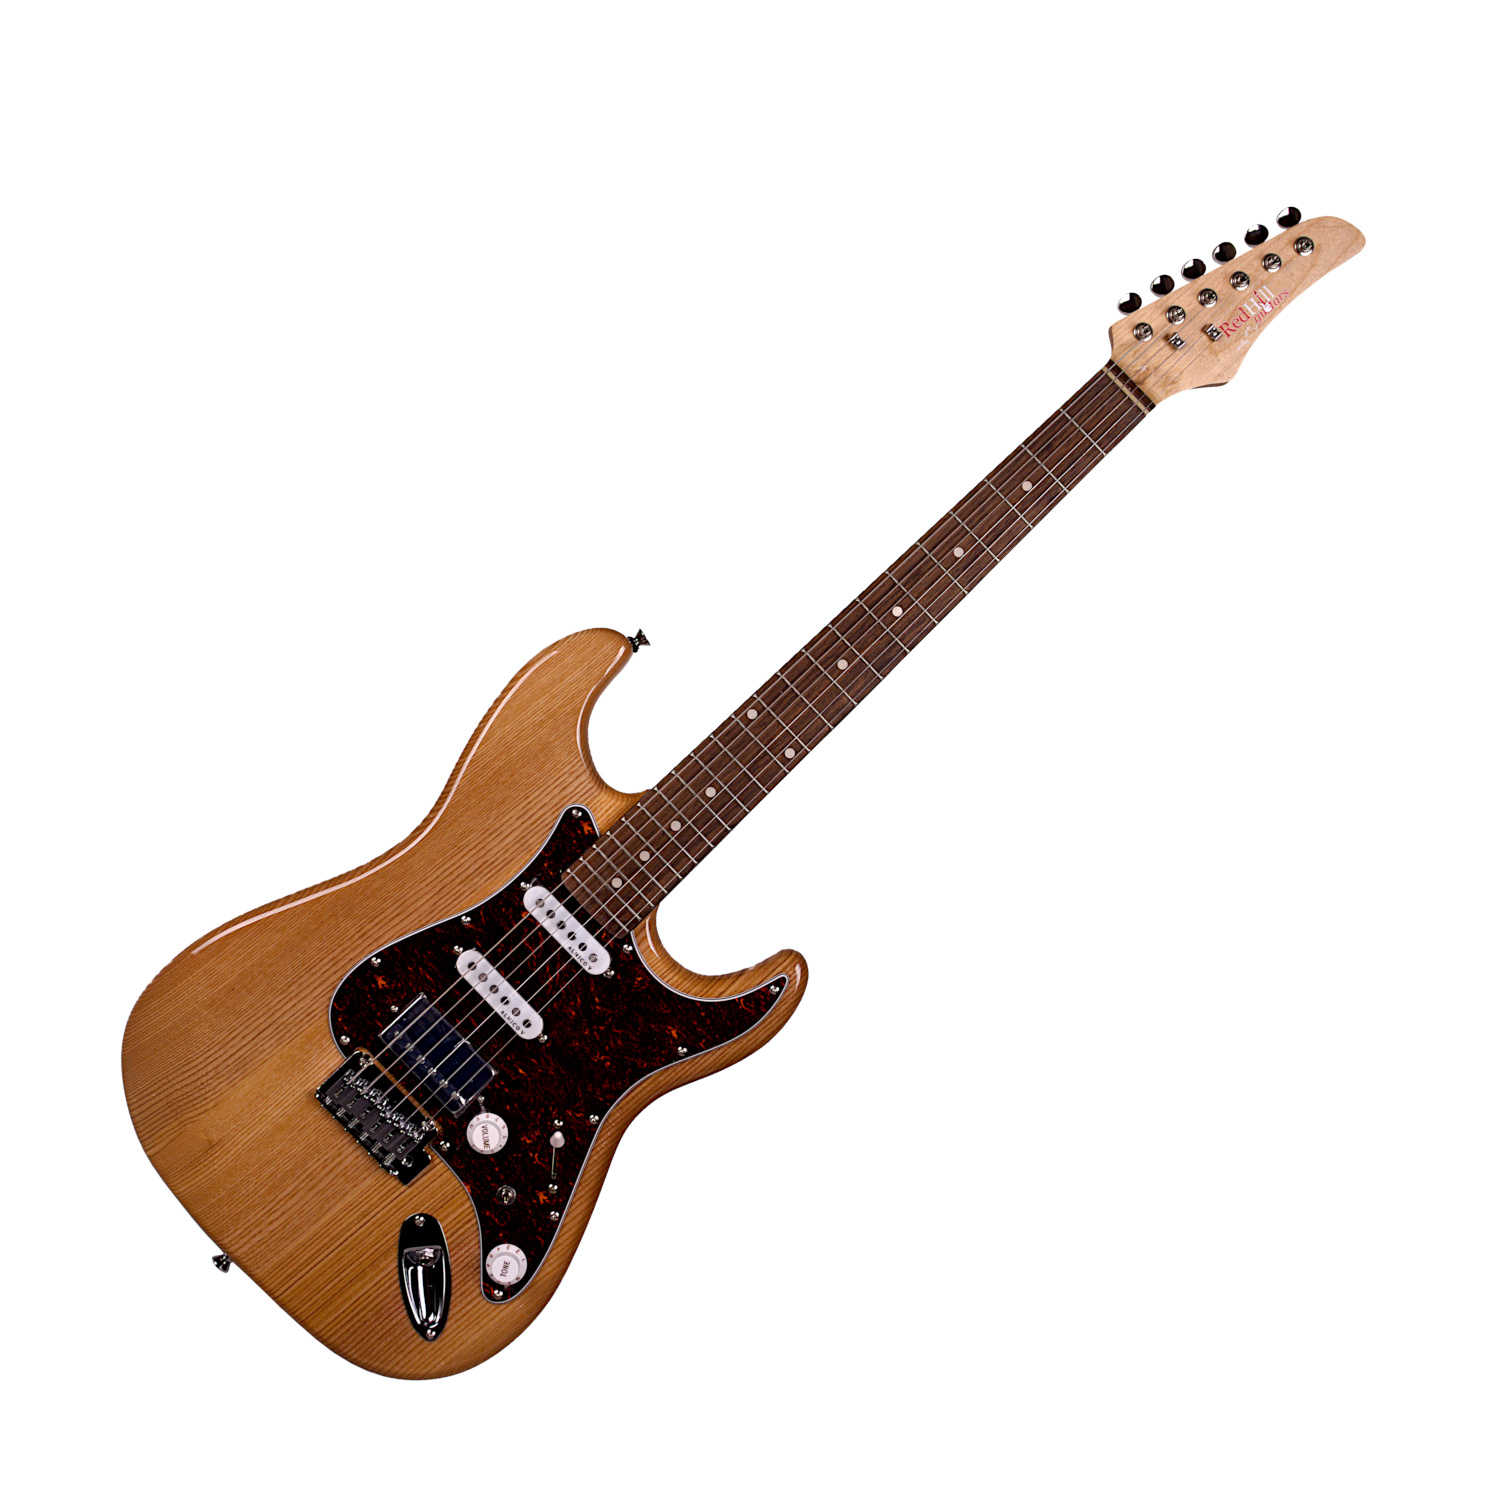 Redhill - гитары для всех и каждого. Детальное описание основных моделей! 